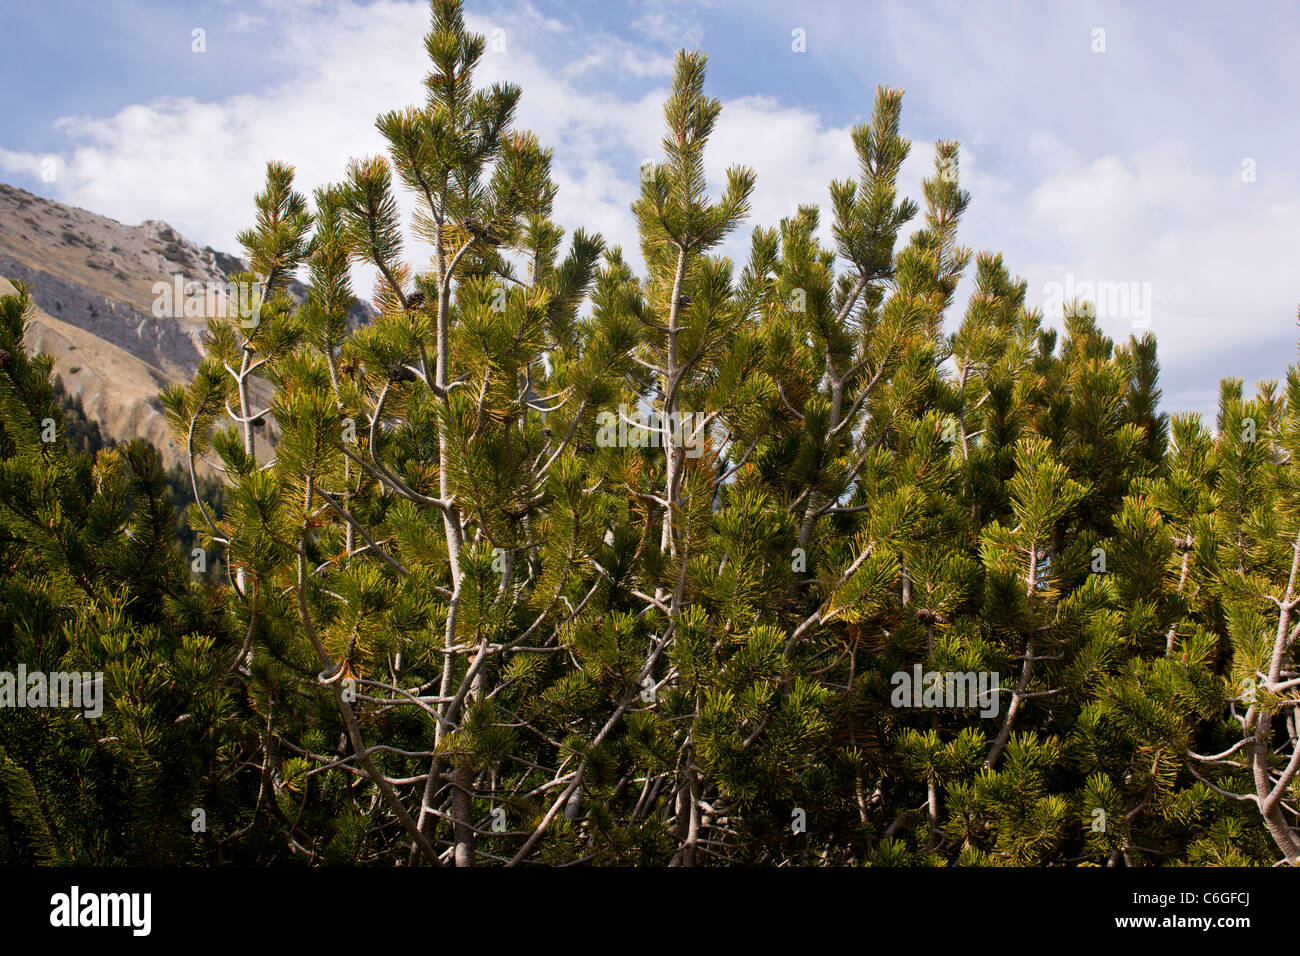 Dwarf Pine, Pinus mugo at the tree line, Pirin, Bulgaria Stock Photo